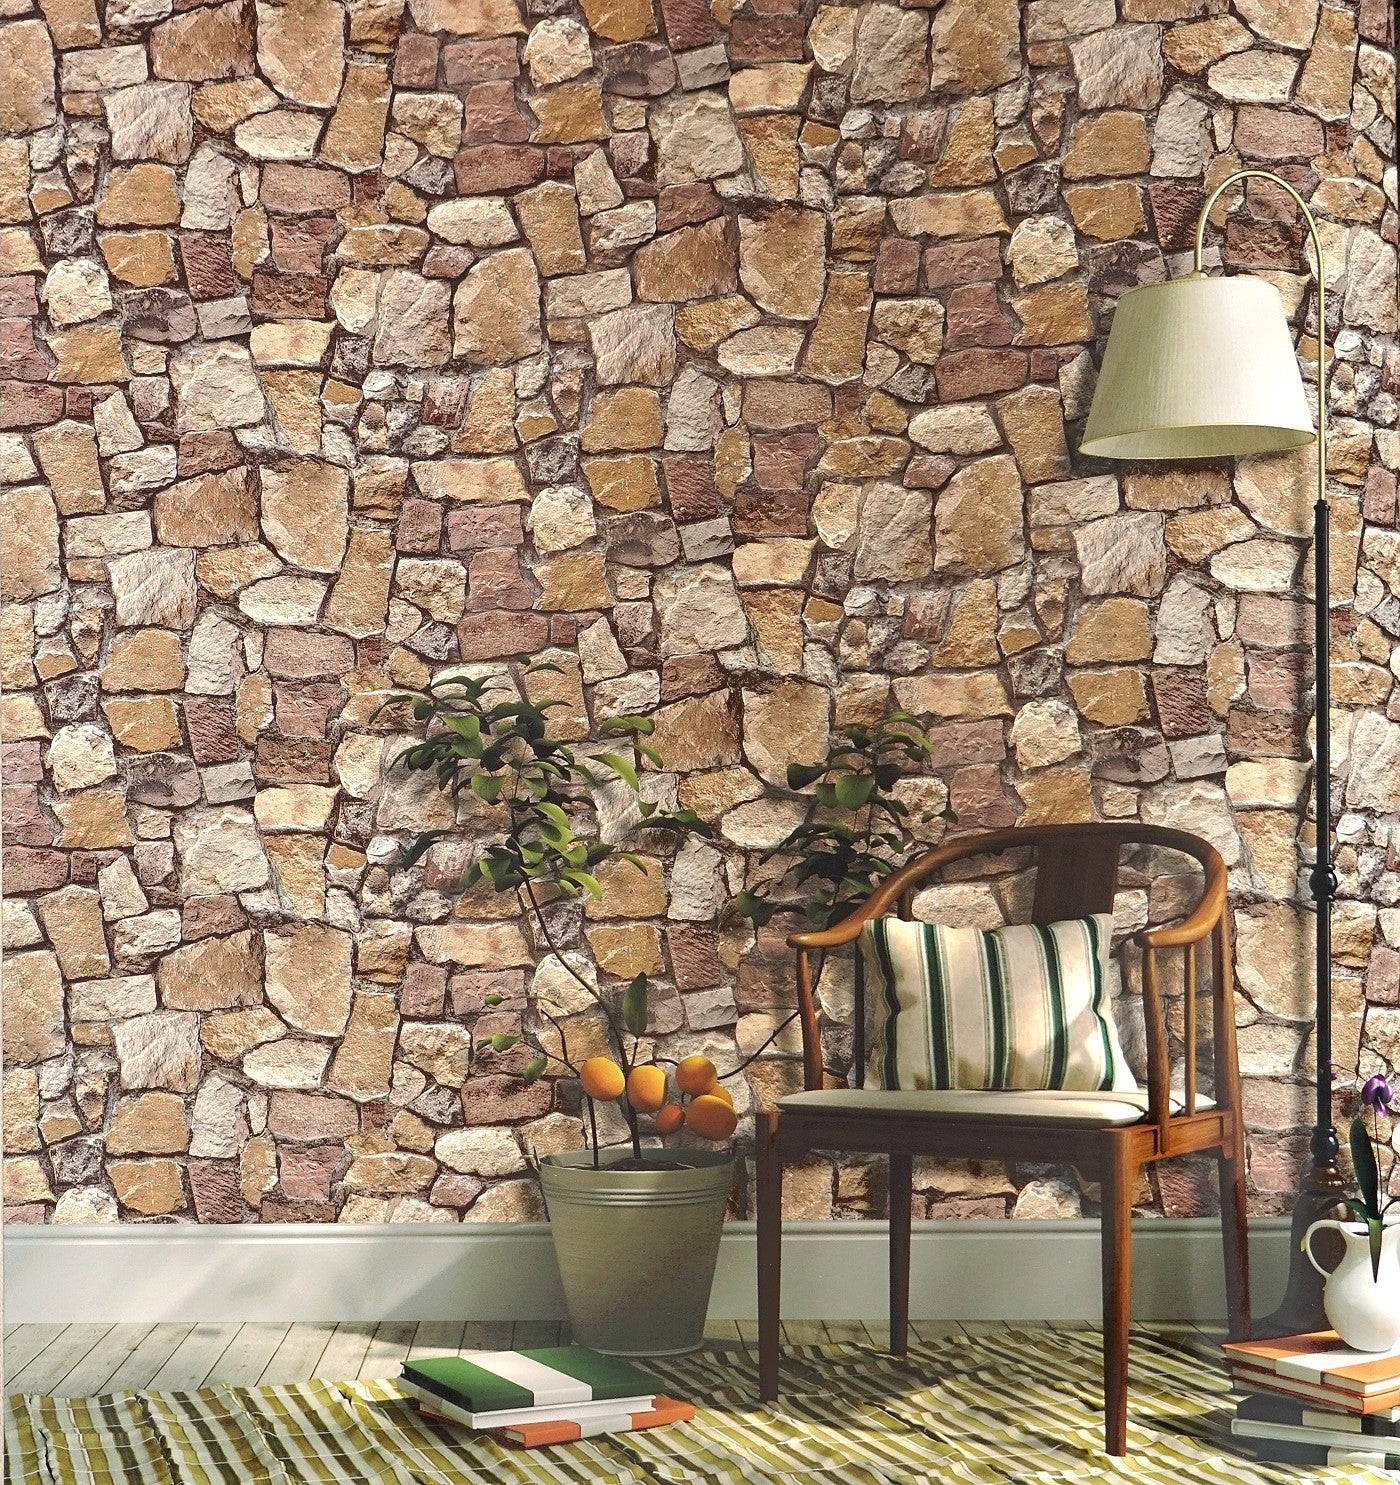 Construção de muro com pedra rústica - ALGARVE